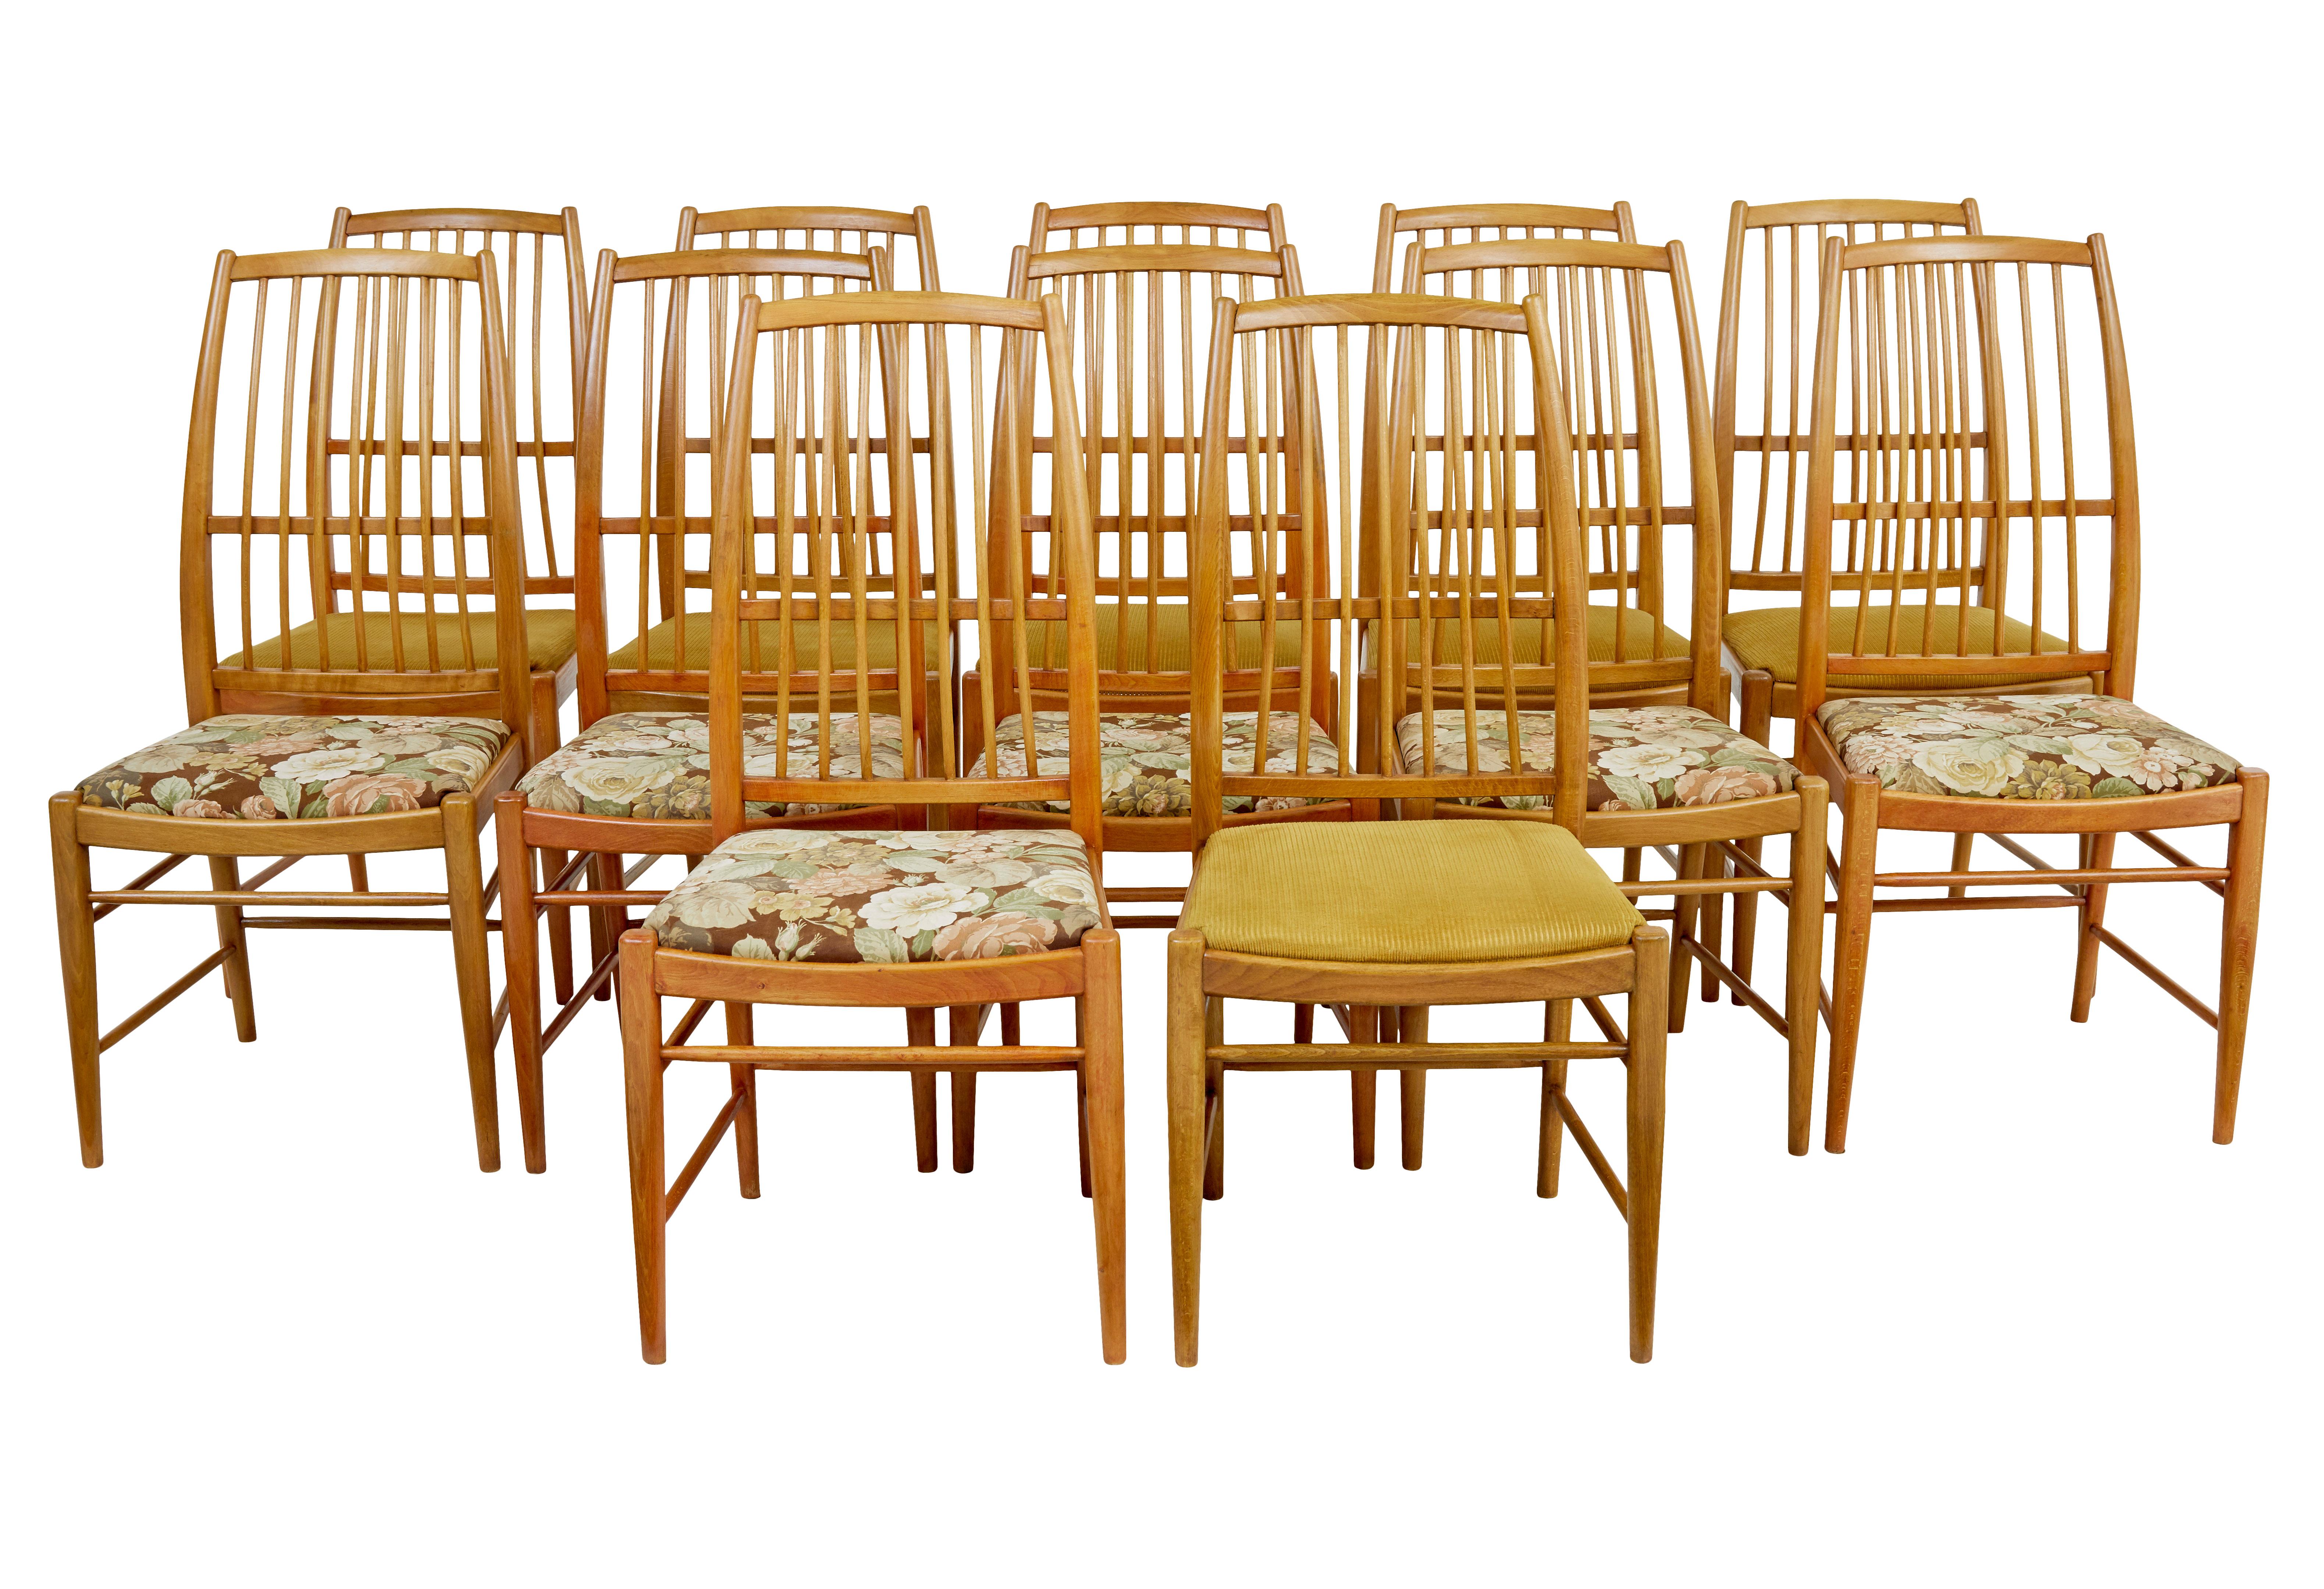 Schöner Satz von 12 Esszimmerstühlen, entworfen von David Rosen im Jahr 1953.

Aufgrund der verschiedenen Stoffe und der leicht unterschiedlichen Holztöne werden wahrscheinlich 2 Sets zu je 6 Stück angeboten.

Diese für Nordiska Kompaniet